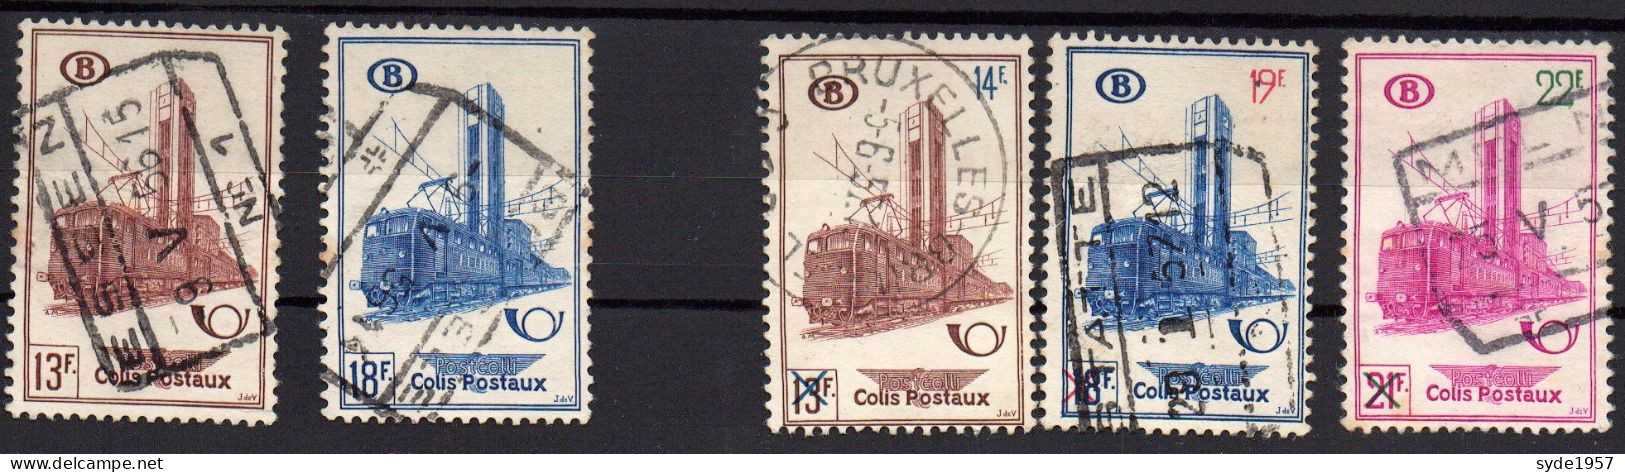 Belgique Chemin De Fer 1954-1956 COB CF355, 356, 358, 359, 360,  5 Timbres Oblitérés, - Used